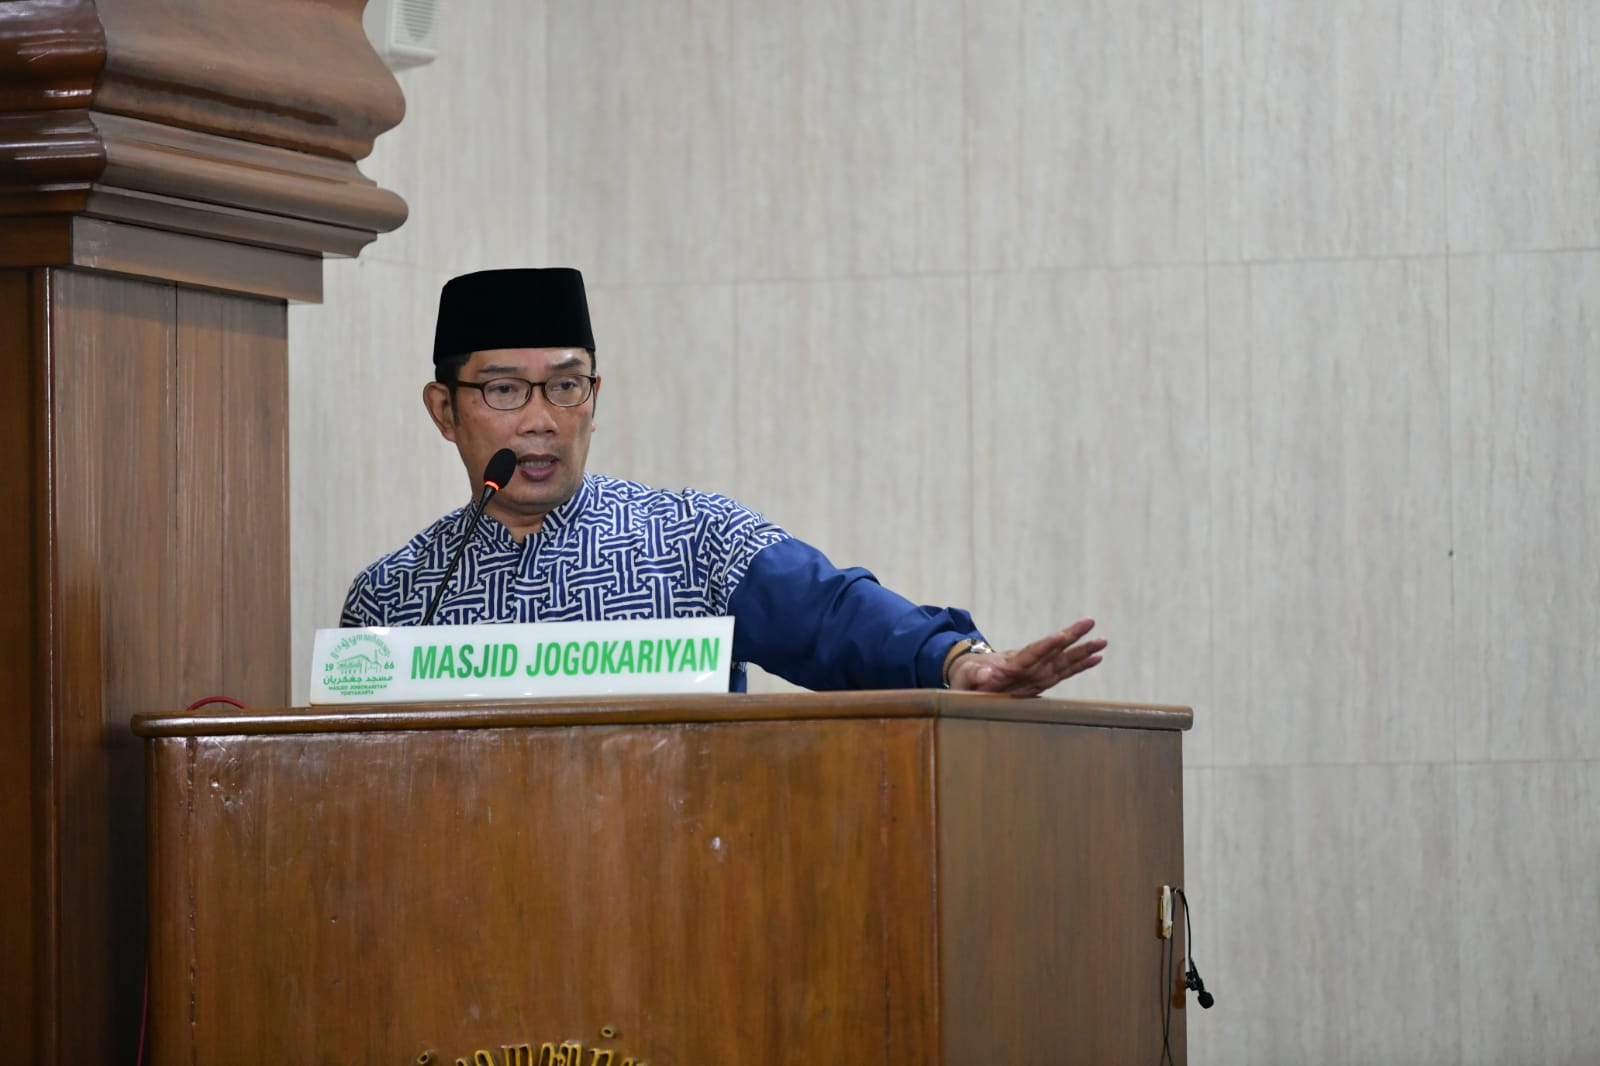 Ridwan Kamil: Pegang Teguh Syariat Islam Untuk Keadilan Disampaikan kepada jemaah Jogokariyan Yogyakarta